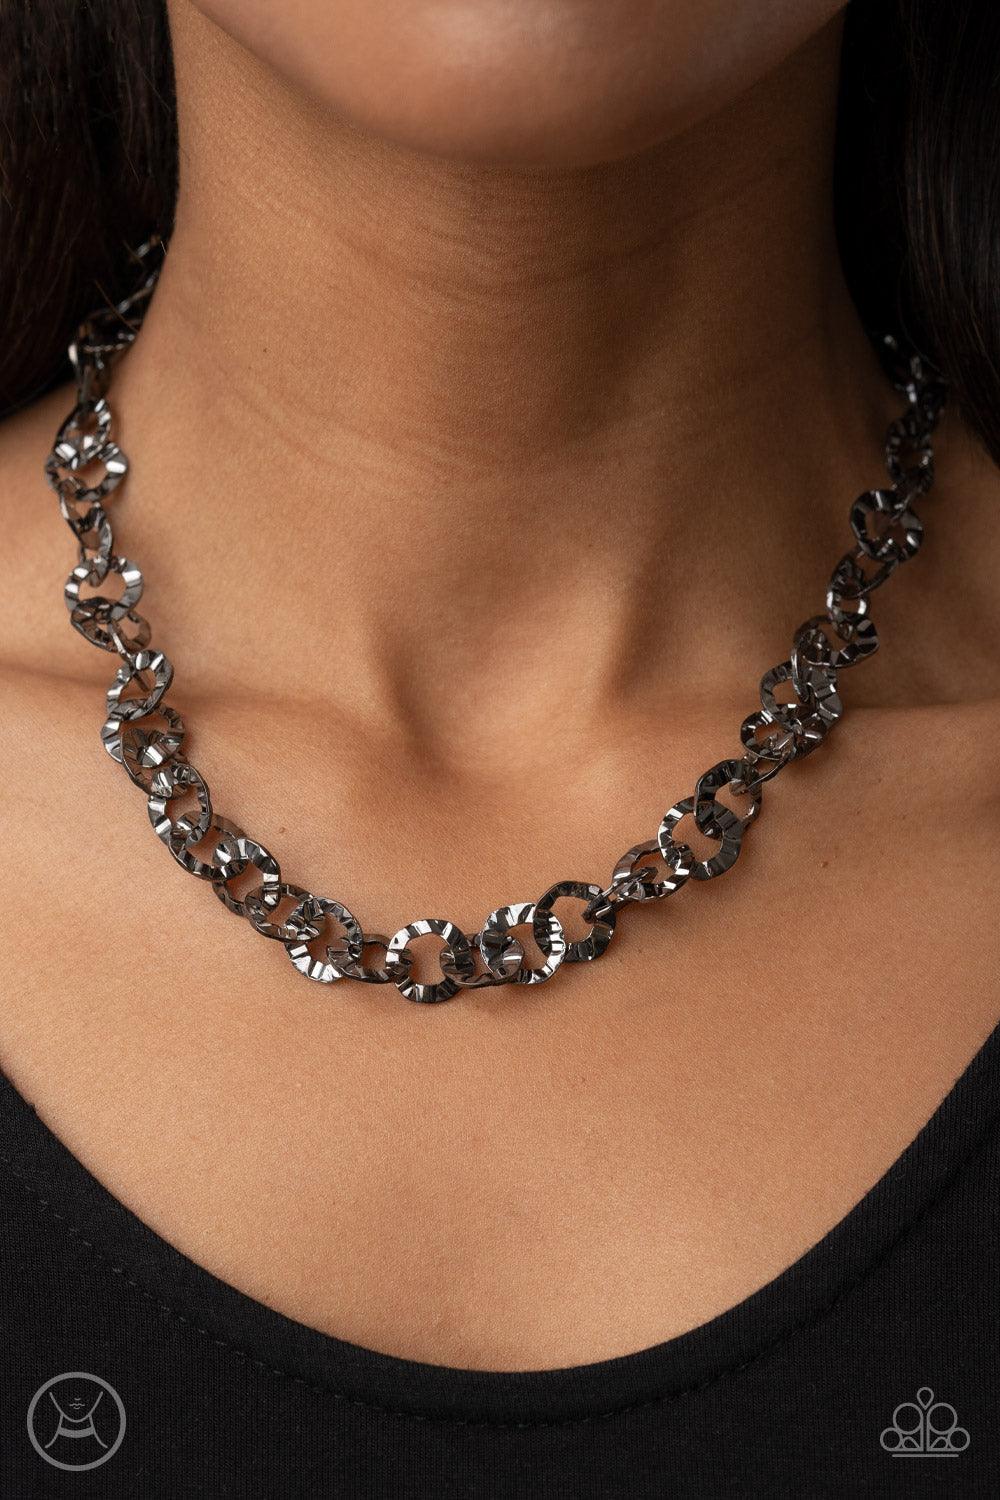 Rebel Grit Black Necklace - Jewelry by Bretta